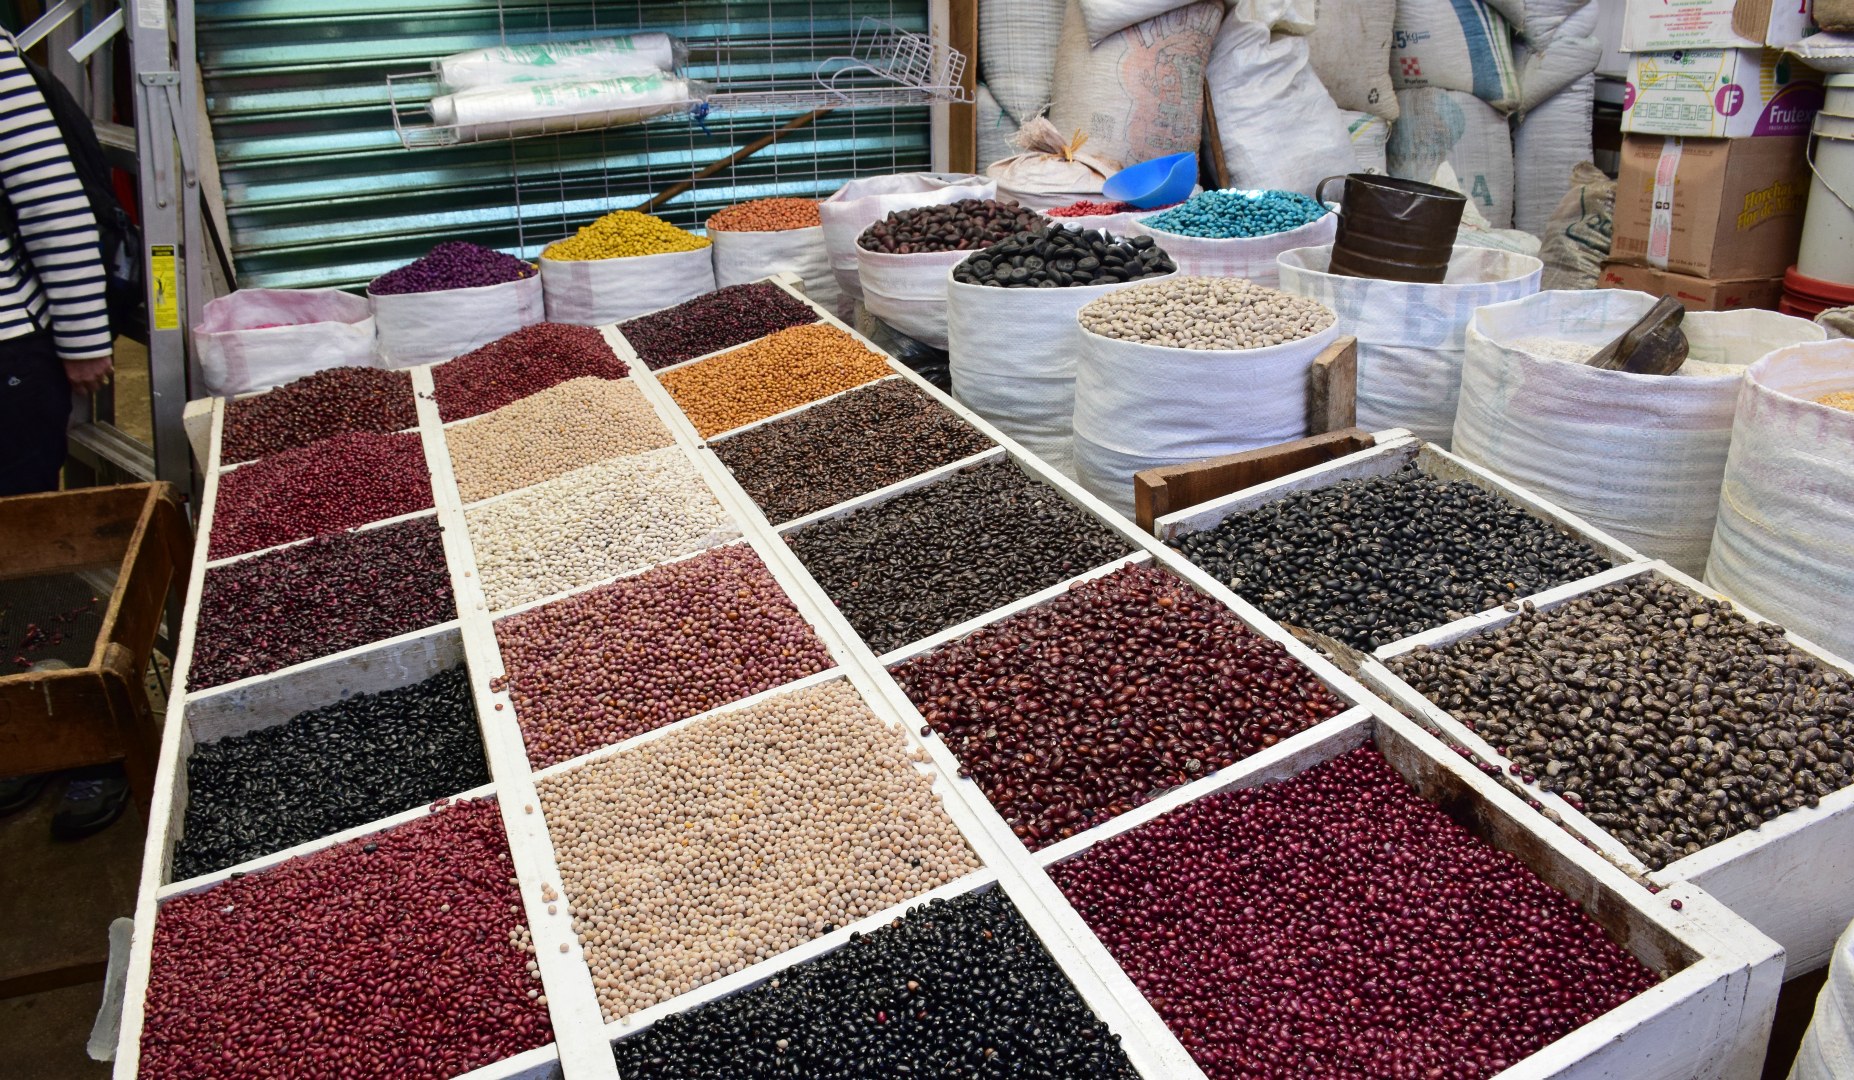 Beans for sale, San Cristobal de las Casas, Mexico